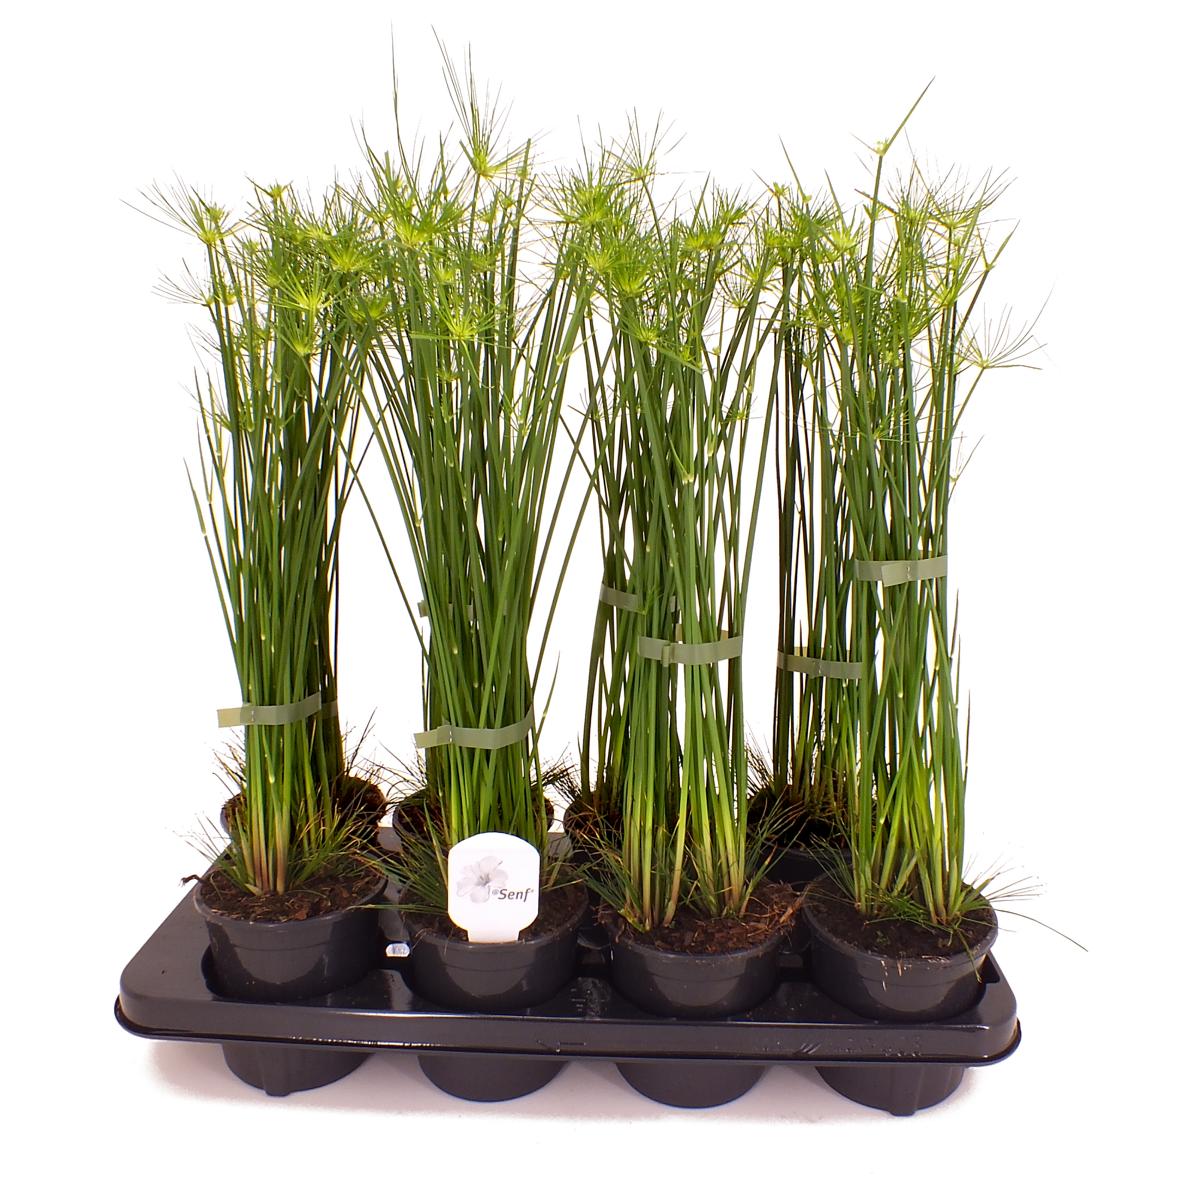 Cyperus - Zyperngras - Wasserpalme - Papyrusgras - Wasserpflanze - Sumpfpflanze